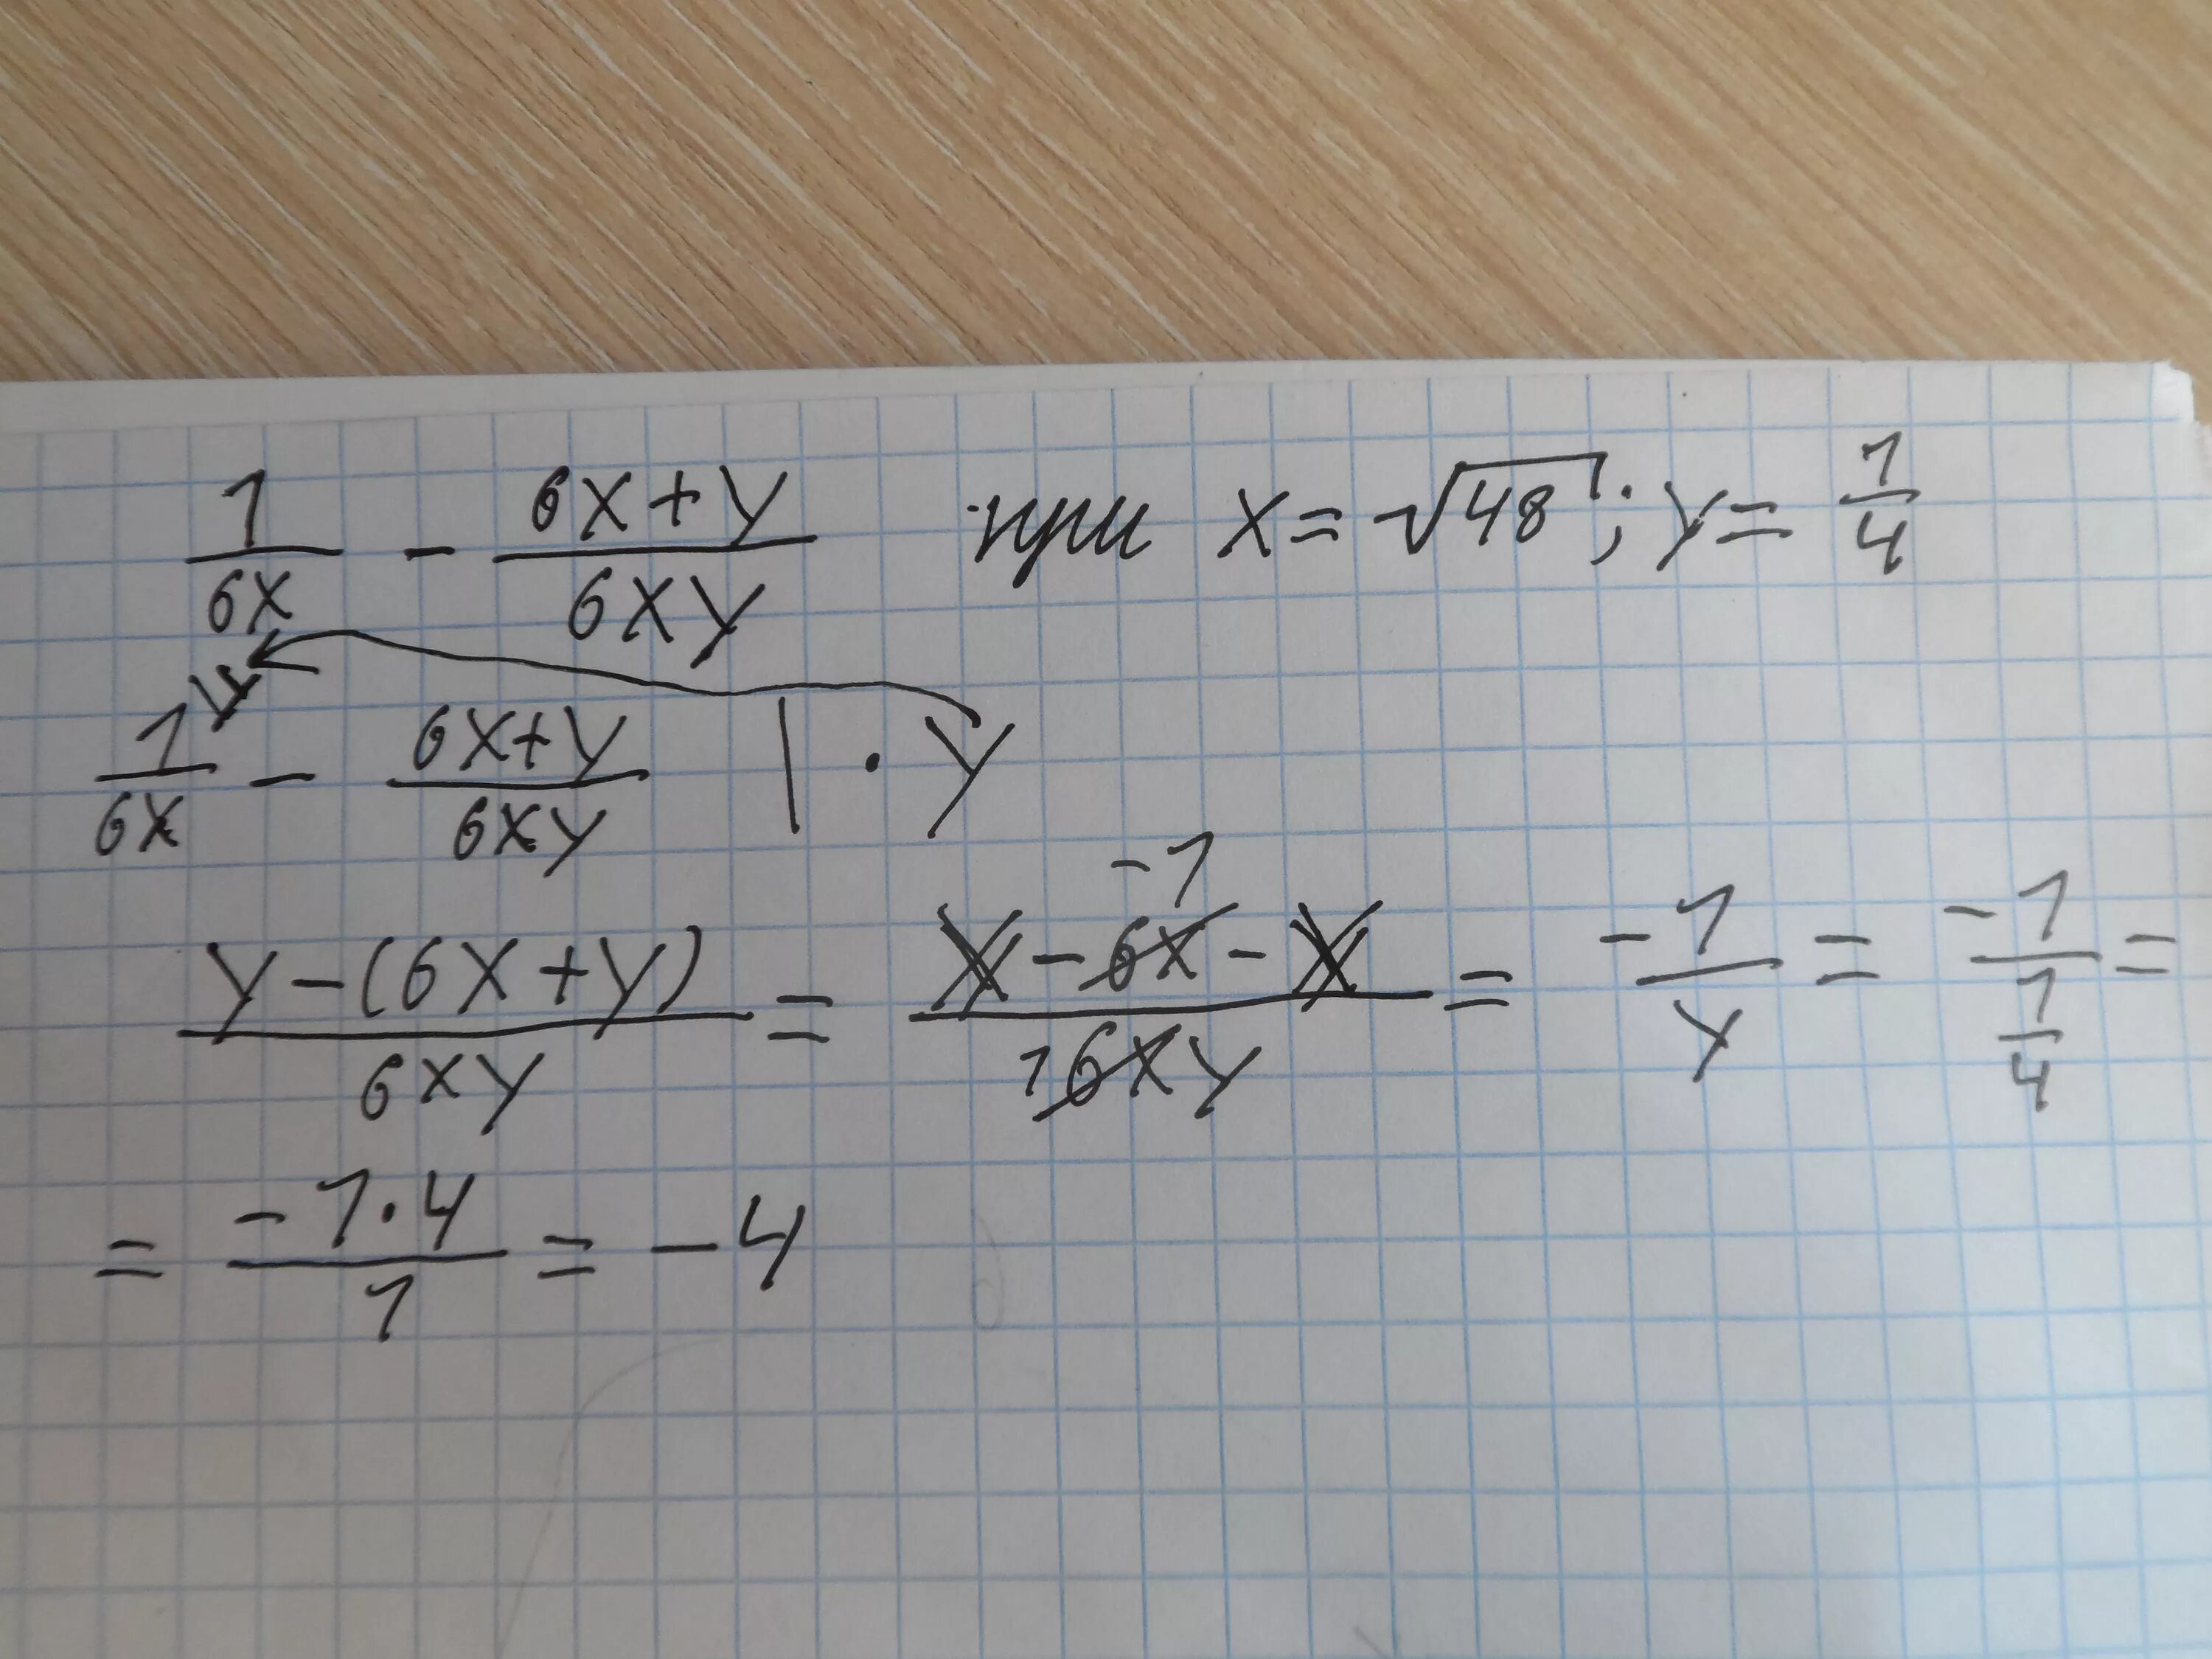 4x 6x 15 6x 10 6. 1/6x-6x+y/6xy при x 48 y 1/4. 1/6x - 6x +y/ 6xy при х=корень из 48. 1 6x 6x y 6xy при x корень 32. 1/6x-6x+y/6xy при x корень из 48 y 1/4.